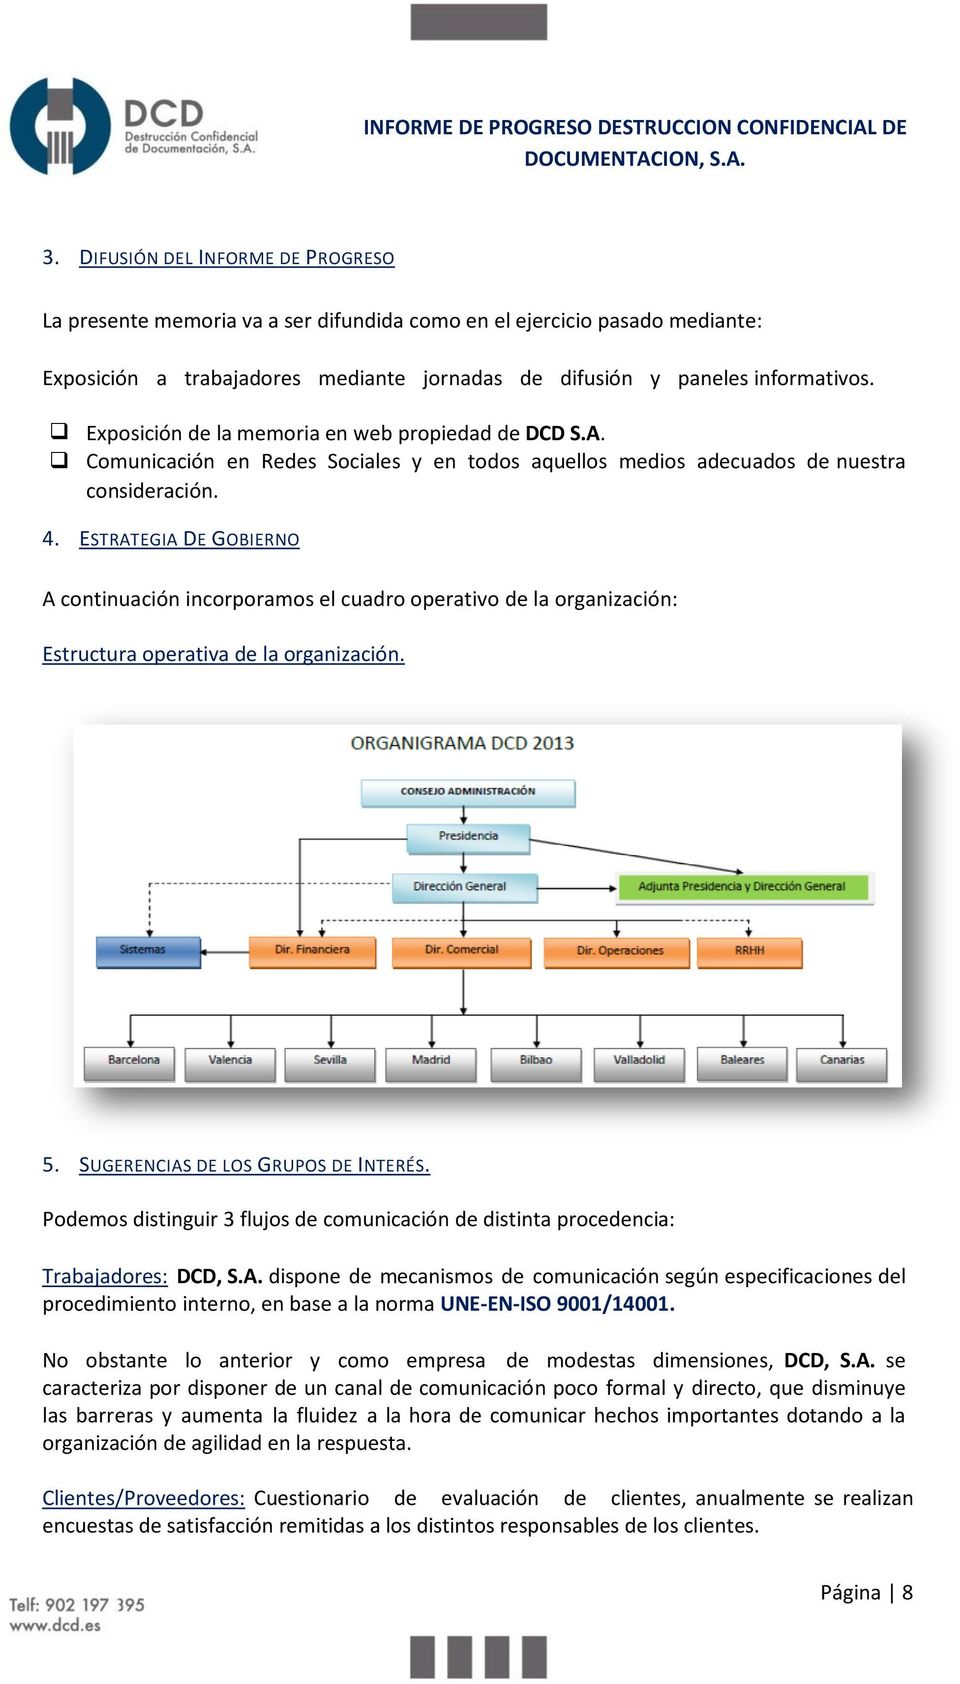 ESTRATEGIA DE GOBIERNO A continuación incorporamos el cuadro operativo de la organización: Estructura operativa de la organización. 5. SUGERENCIAS DE LOS GRUPOS DE INTERÉS.